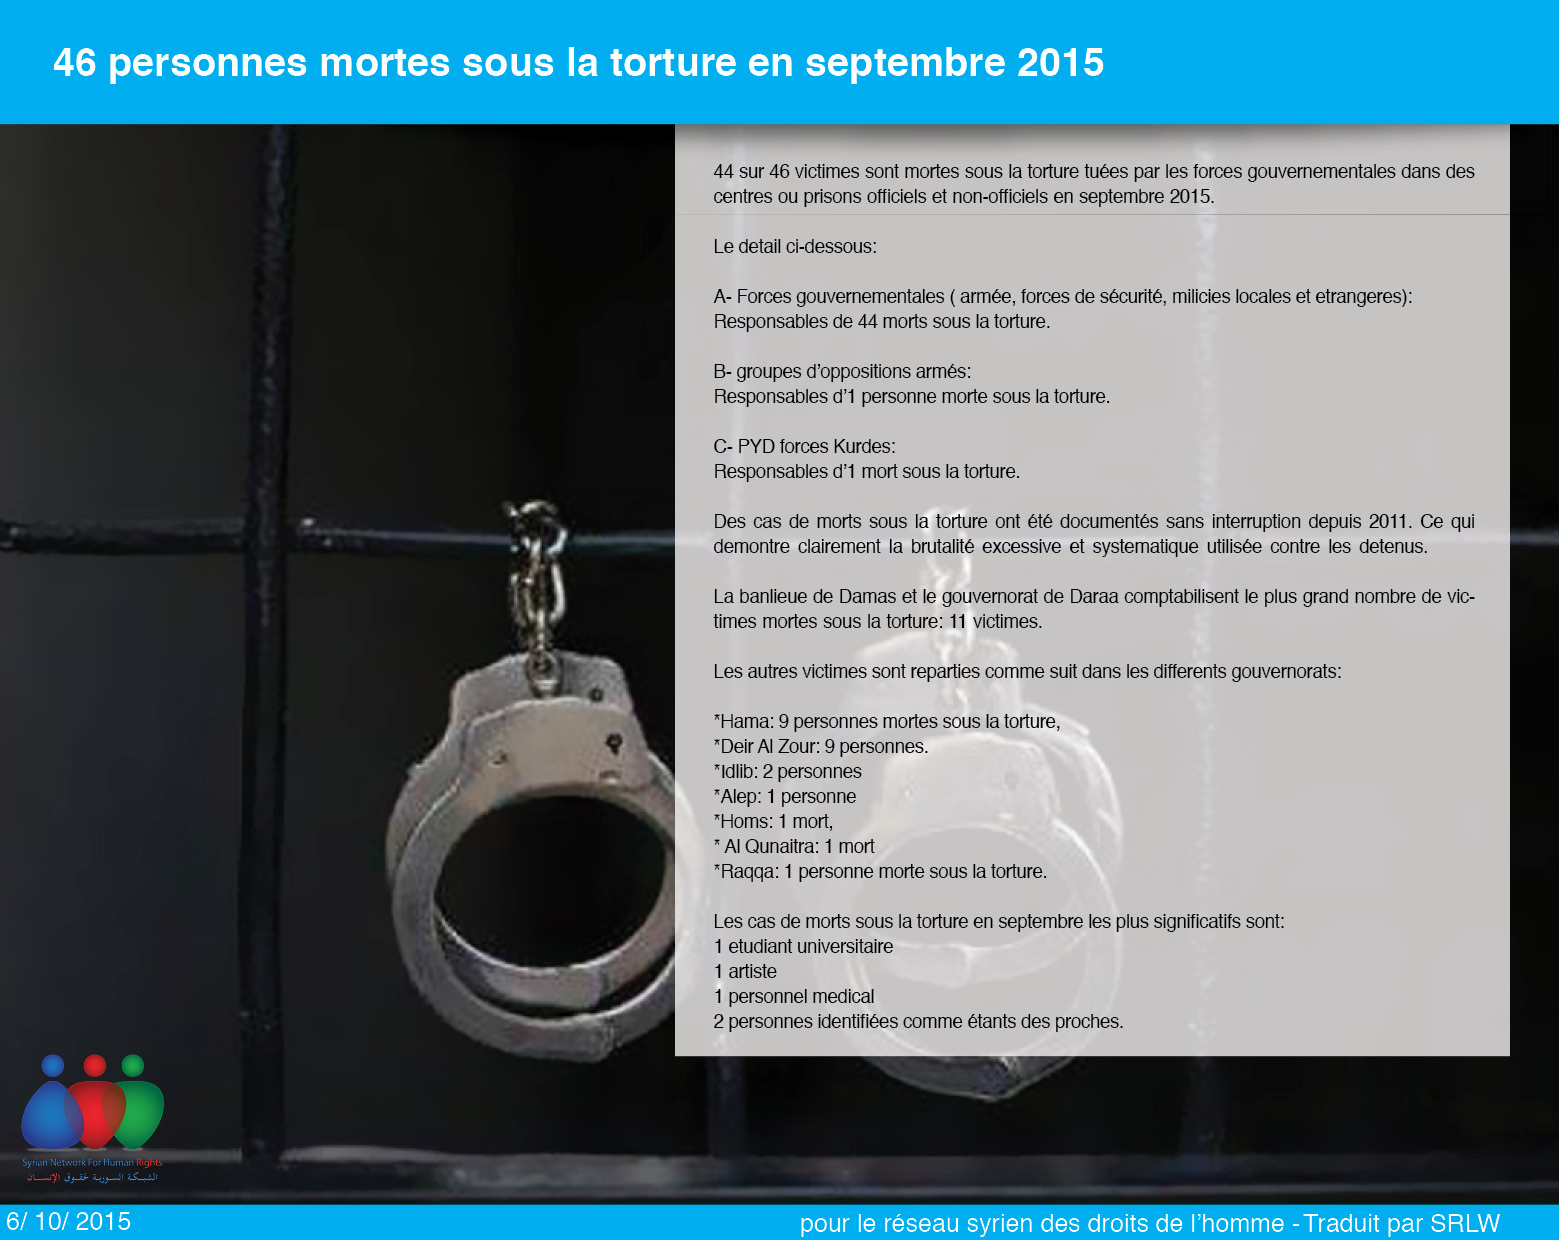 46 personnes mortes sous la torture en septembre 2015